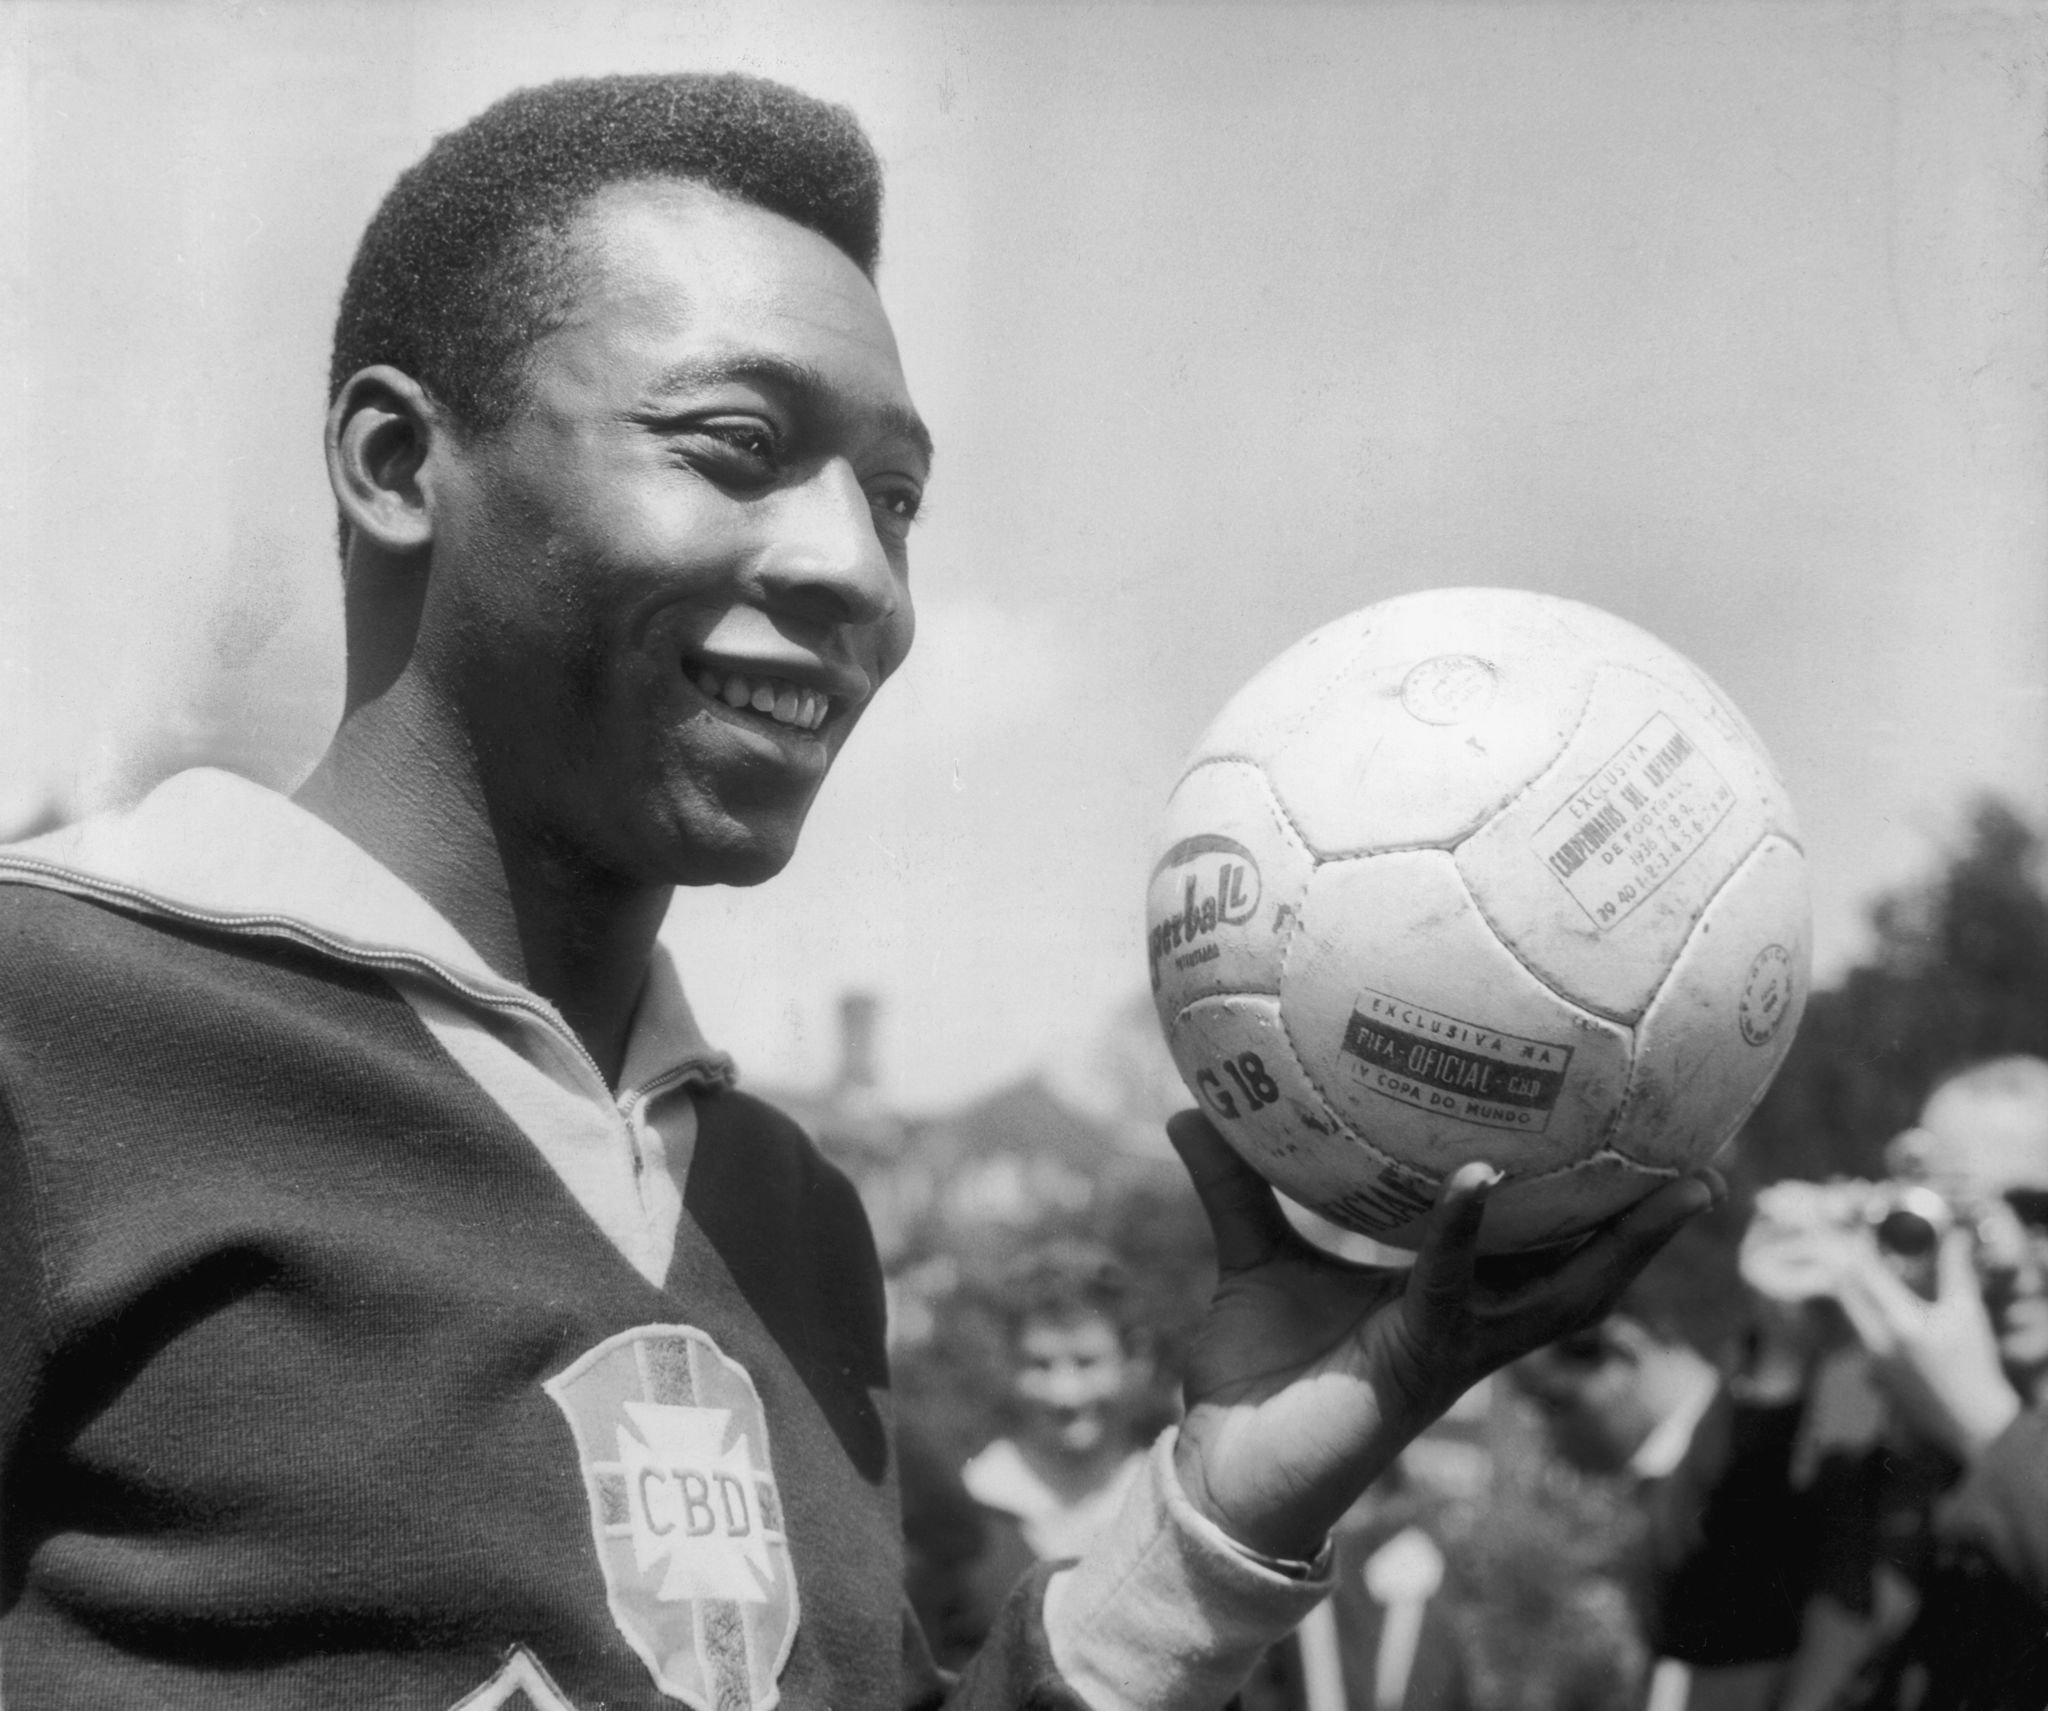 
Khi còn trẻ, Pele giỏi bóng đá nhưng không giỏi kiếm tiền.
